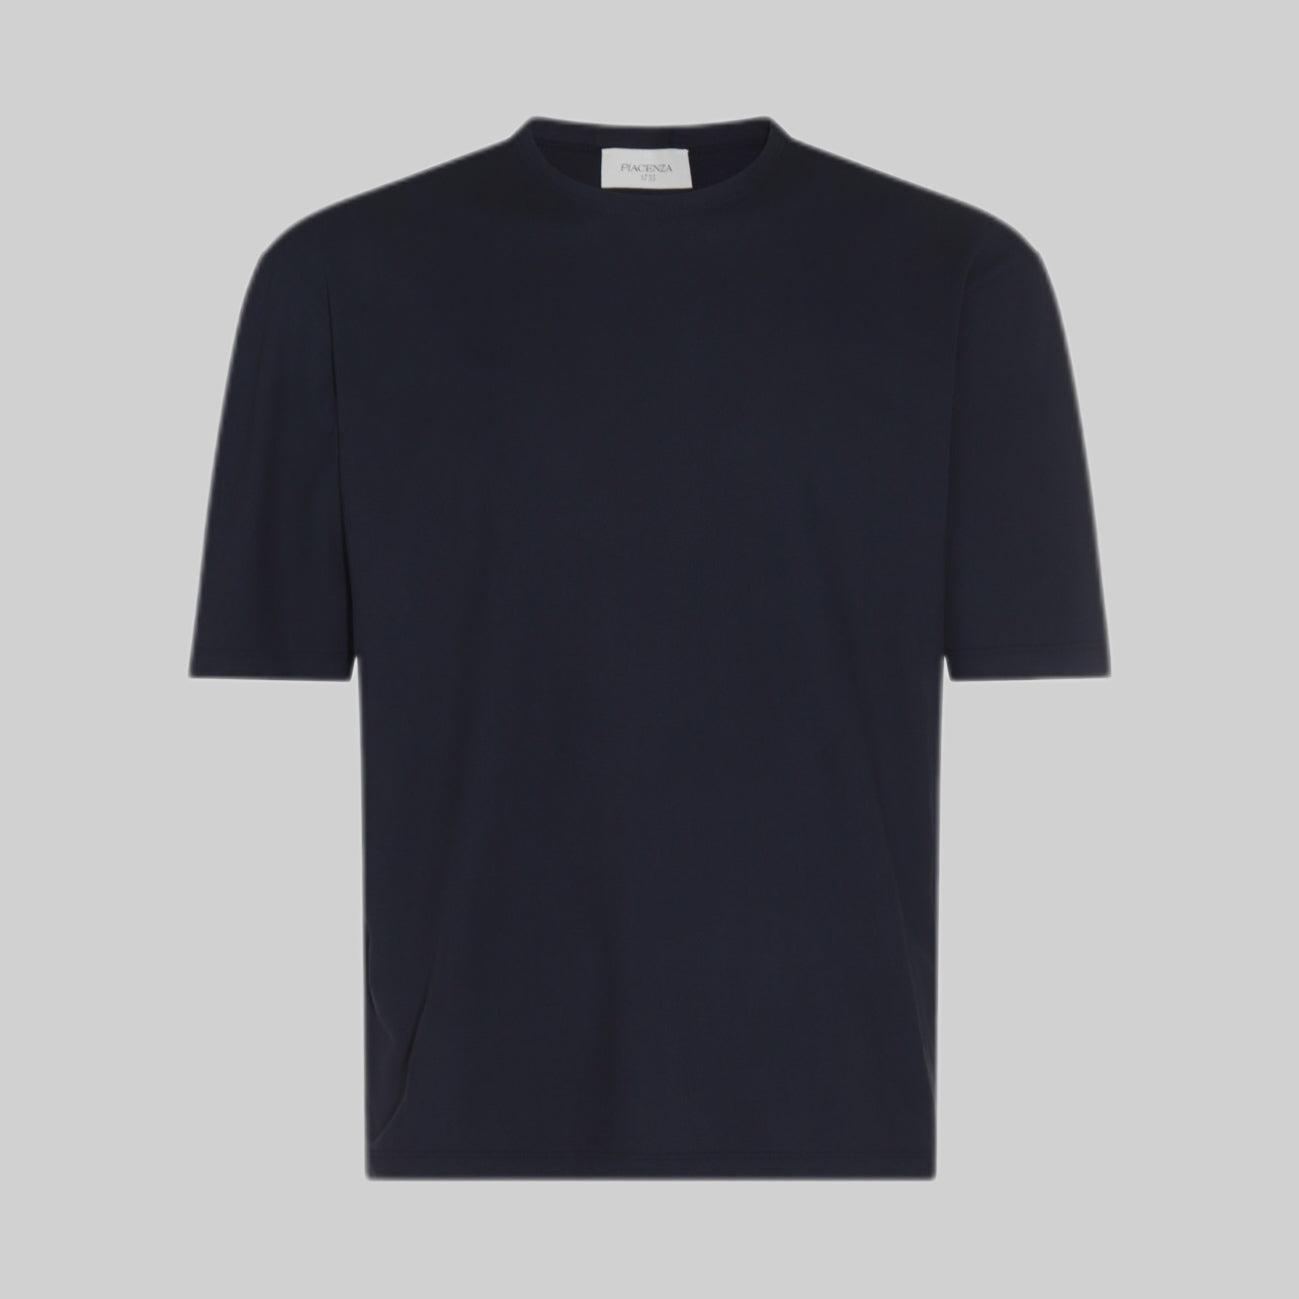 PIACENZA CASHMERE t-shirt, men, blue, frontside